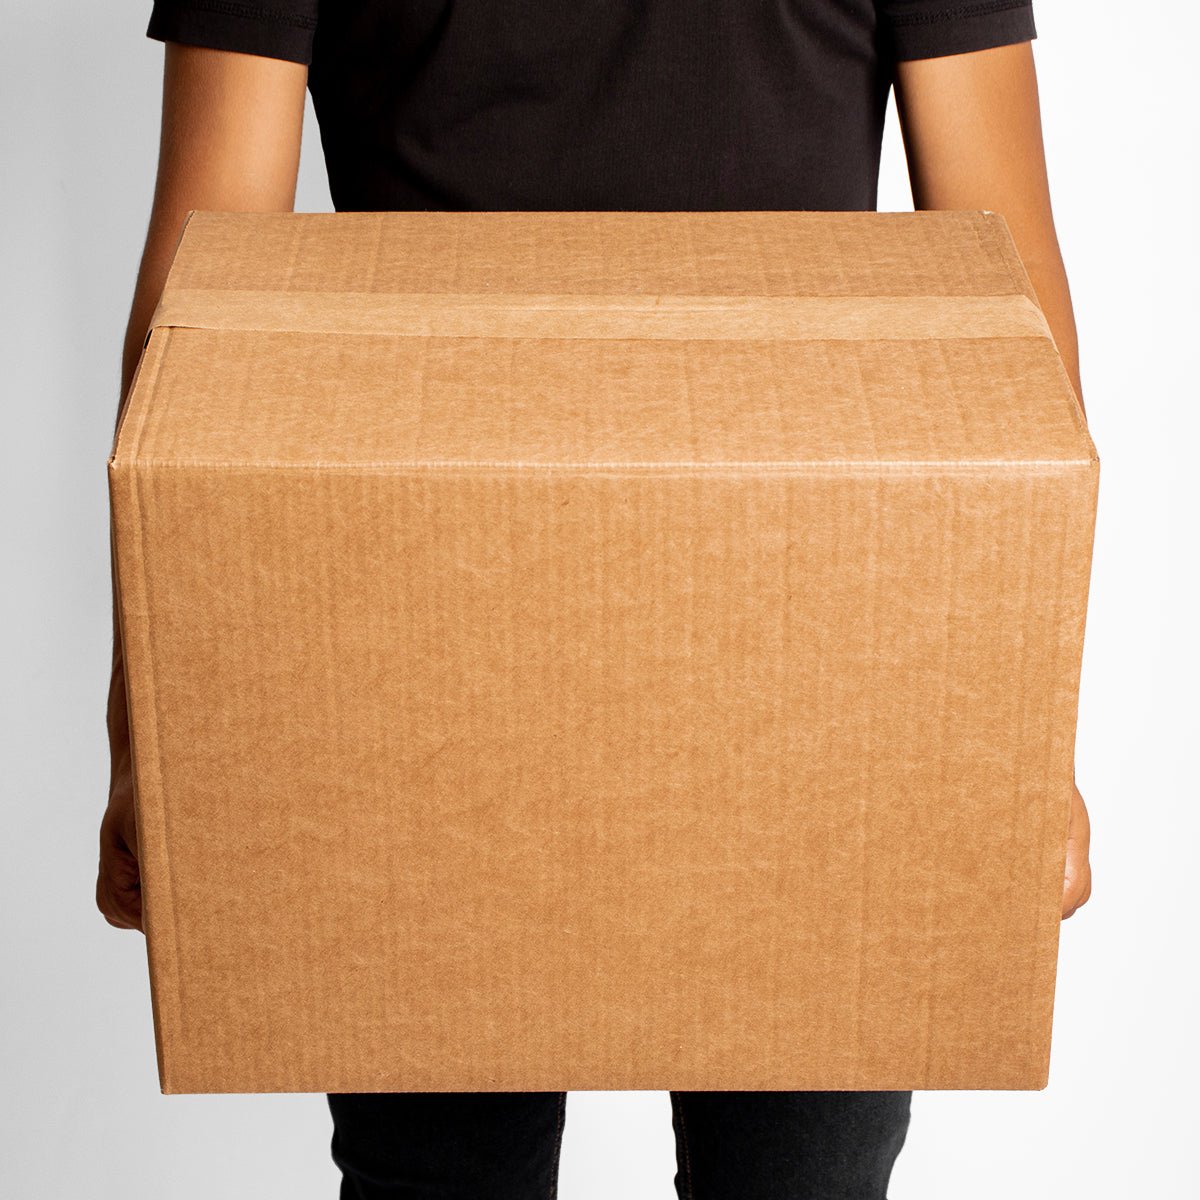 Caja de Cartón - 60x40x40 cm - Doble corrugado